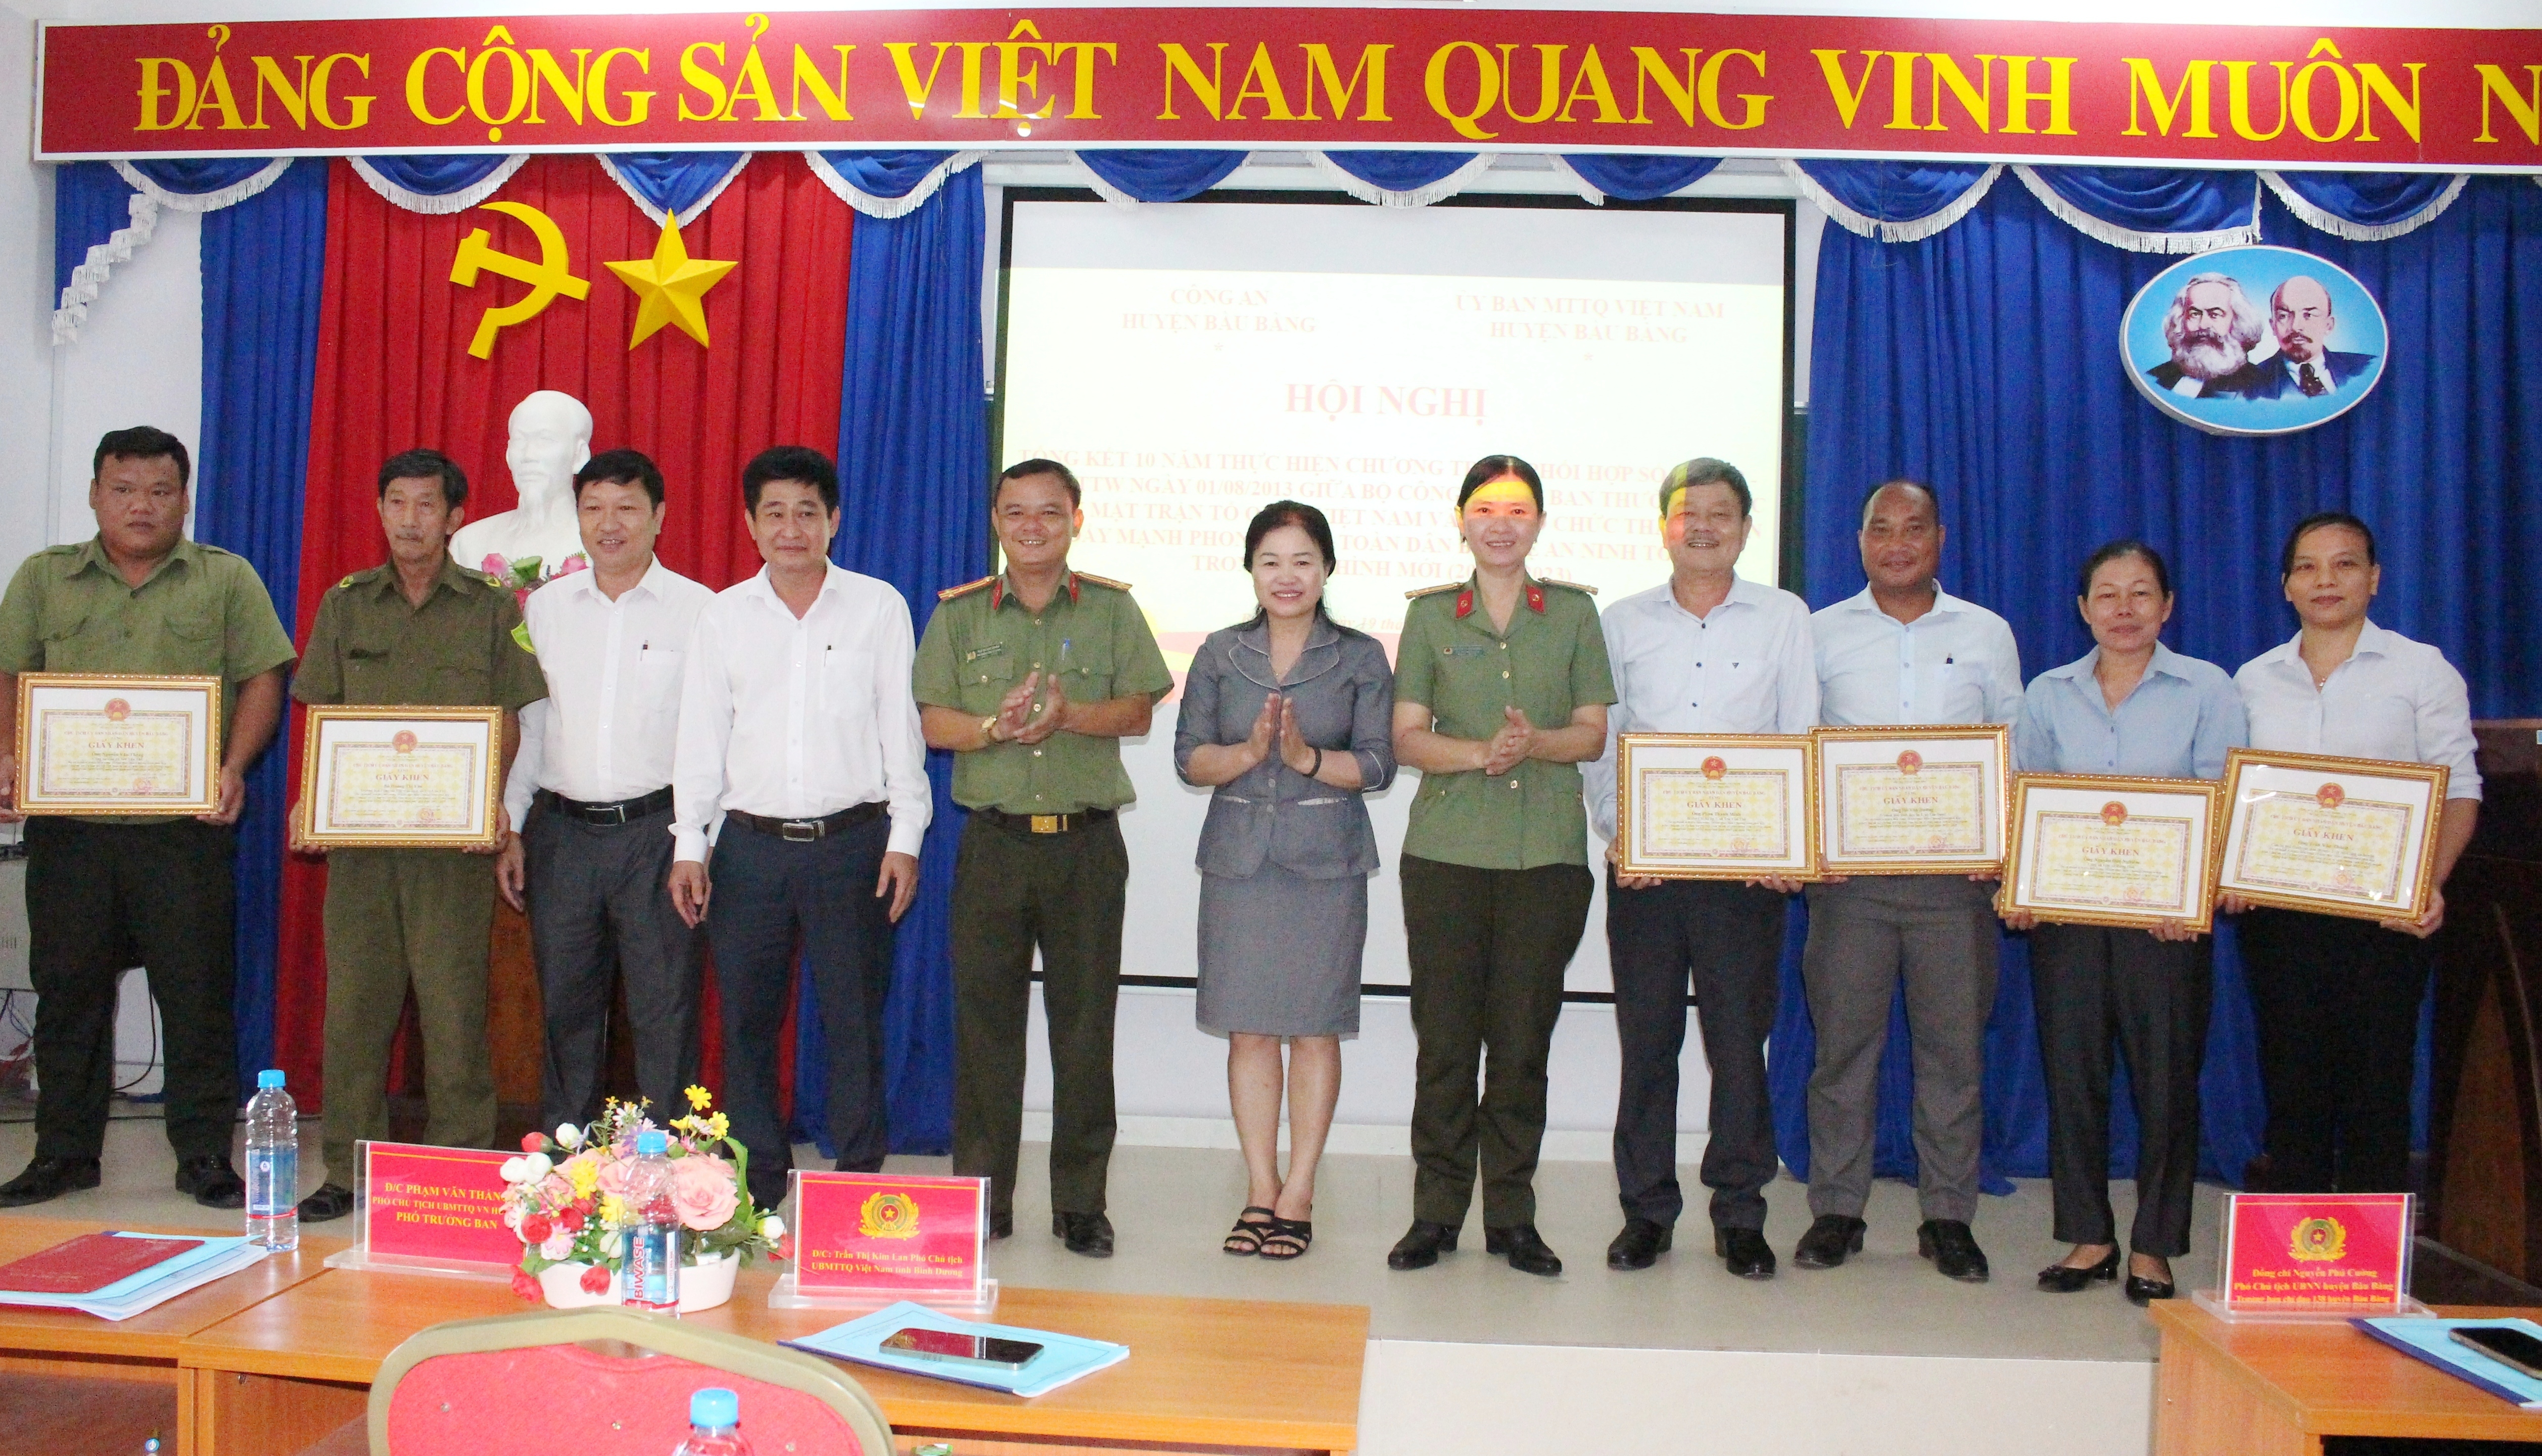 Huyện Bàu Bàng: hiệu quả từ phong trào toàn dân bảo vệ an ninh tổ quốc trong tình hình mới